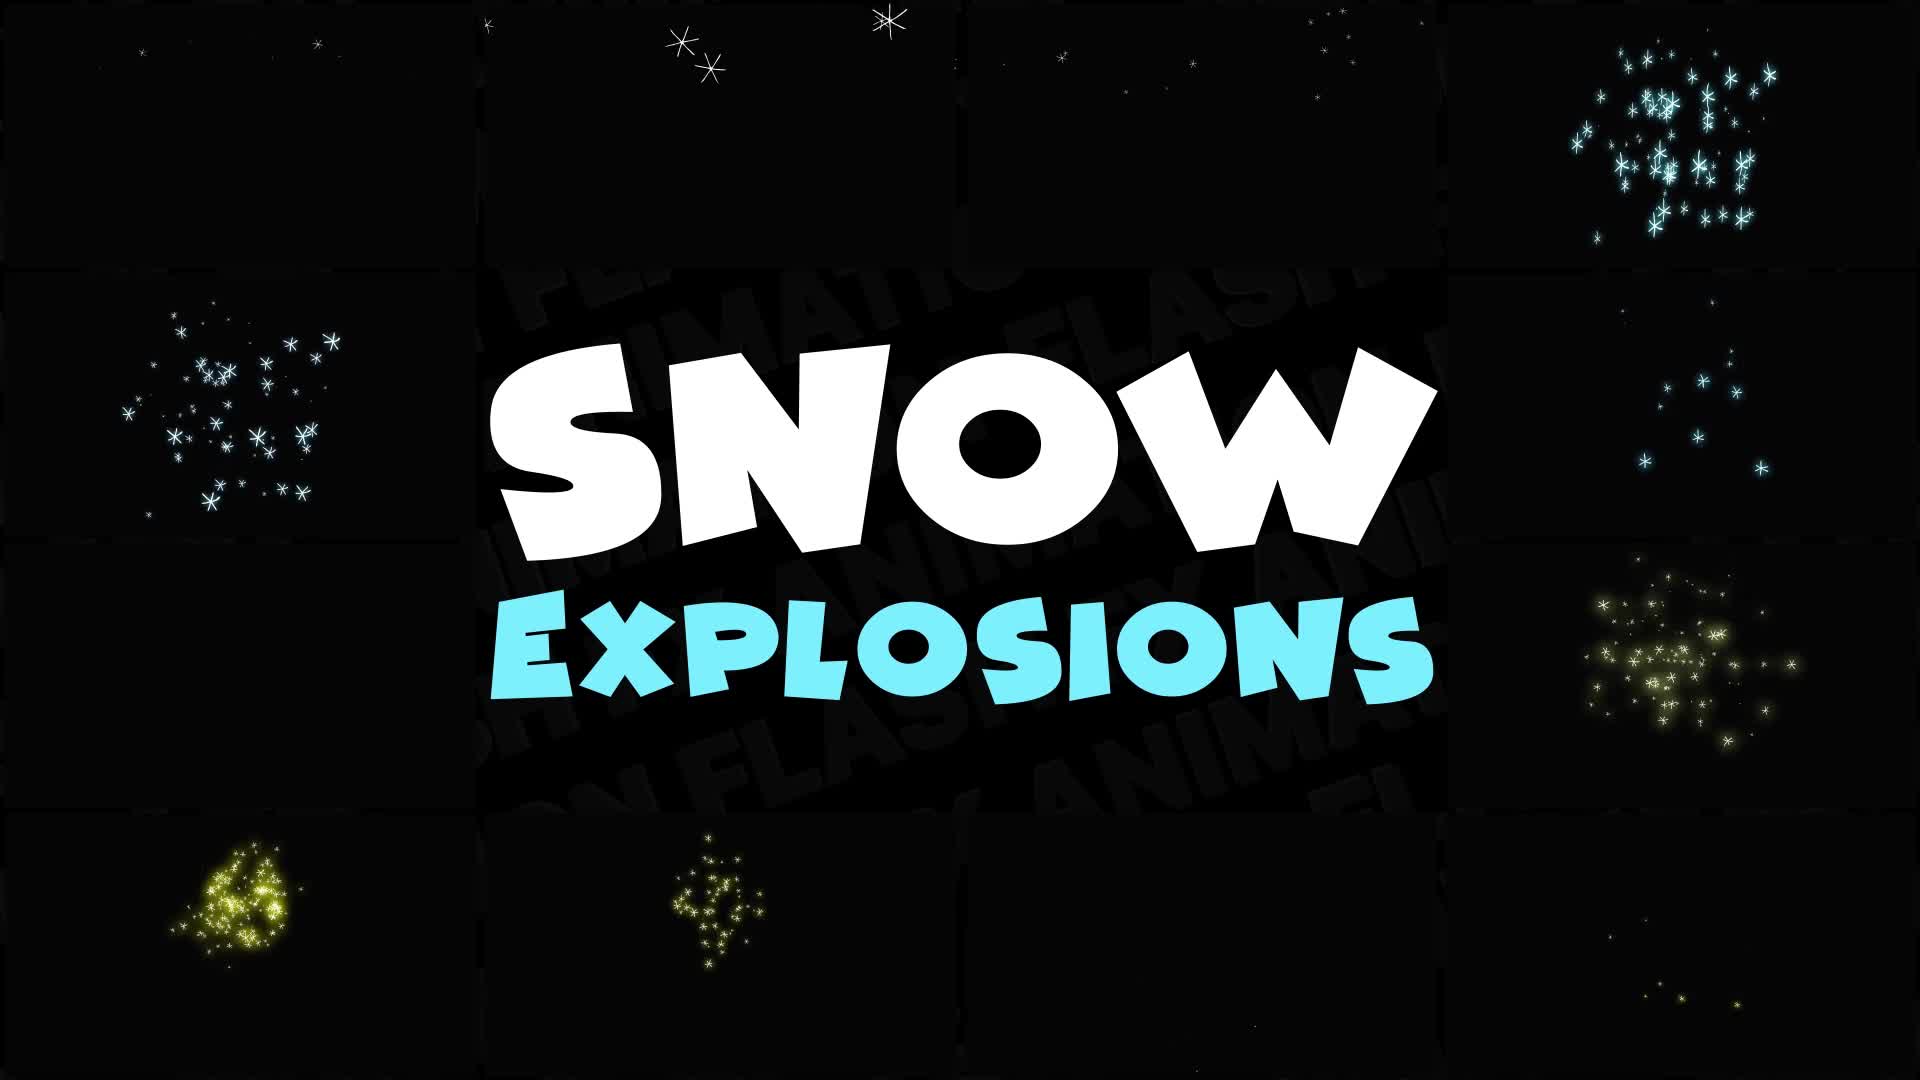 Snow Explosions | Premiere Pro MOGRT Videohive 29521579 Premiere Pro Image 1